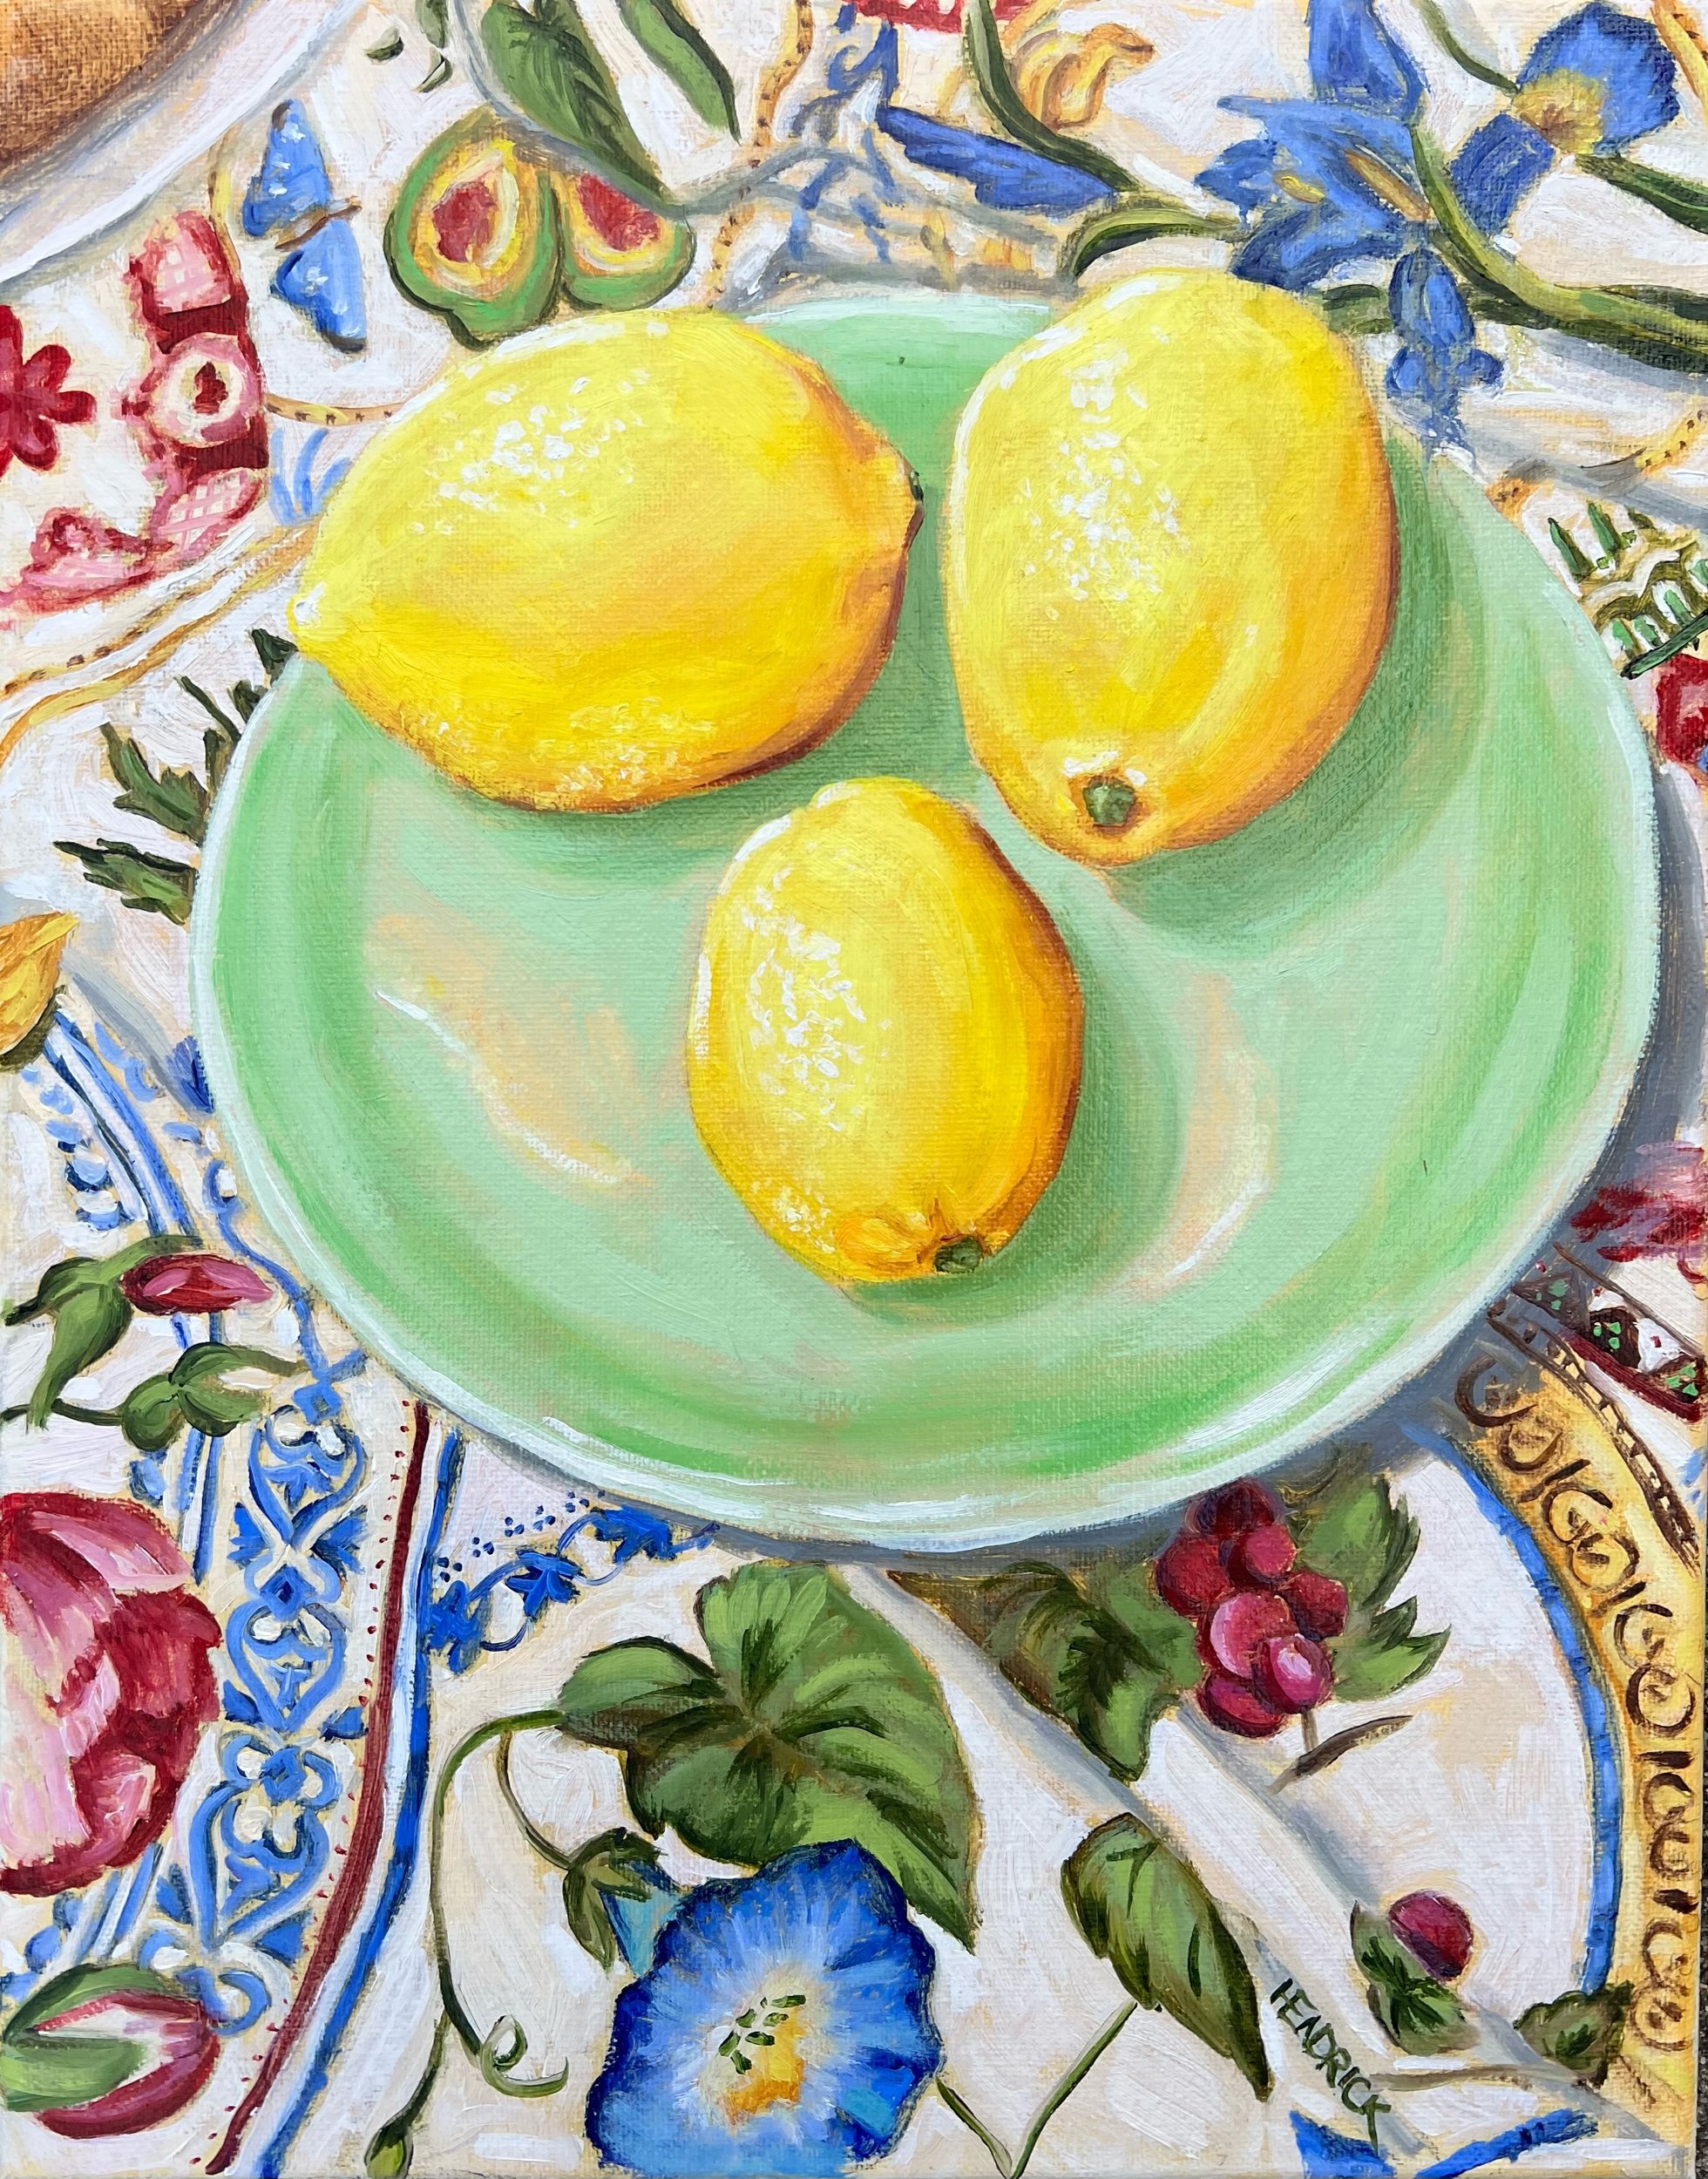 Leslie’s Lemons 11x14”, Oil on canvas 